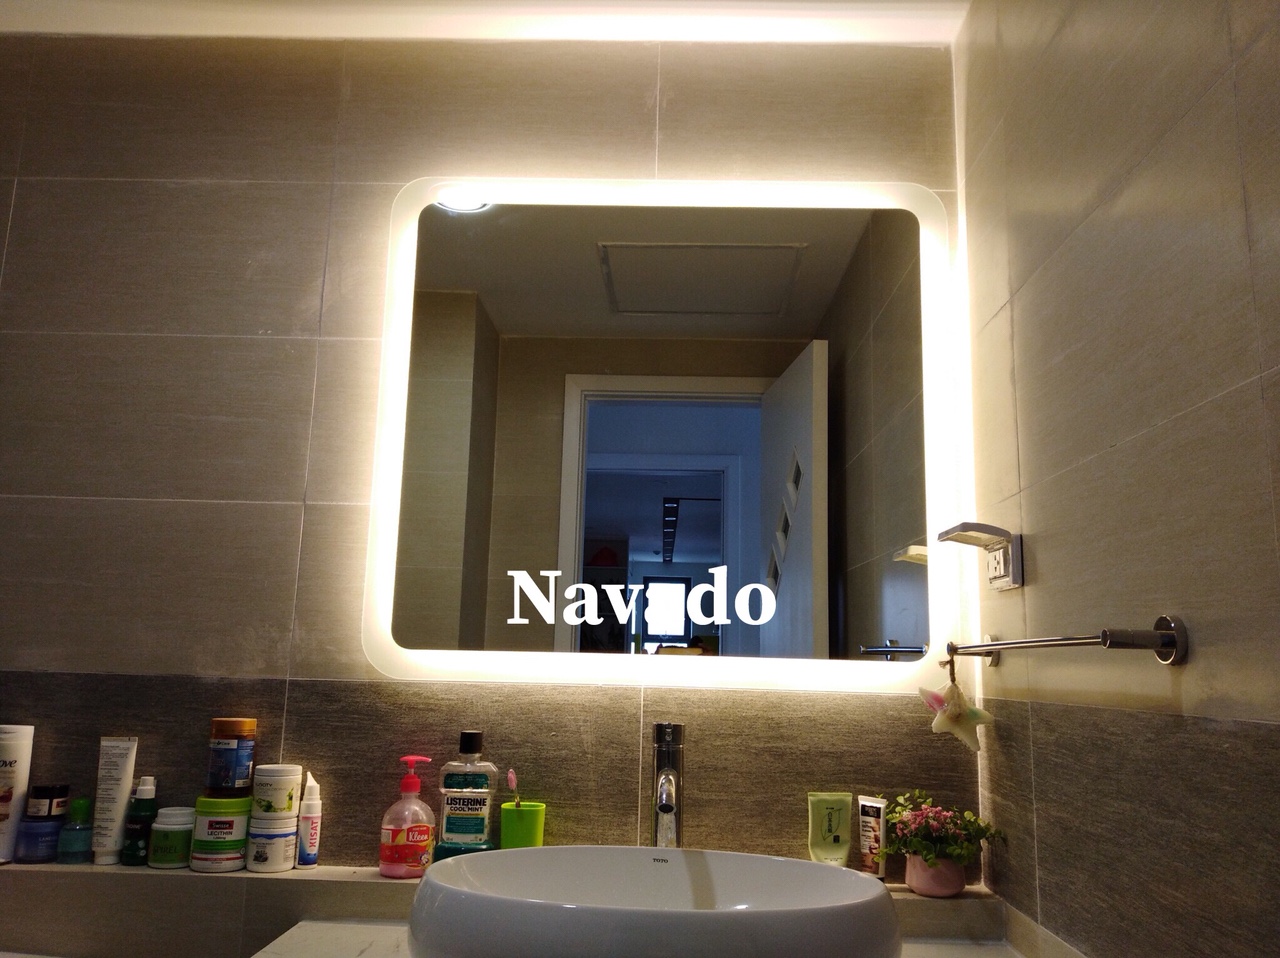 Gương phòng tắm đèn led sẽ là lựa chọn tuyệt vời cho căn phòng tắm của bạn. Vừa có tác dụng chức năng vừa mang lại vẻ đẹp hiện đại, gương phòng tắm đèn led sẽ làm cho không gian phòng tắm trở nên ấm cúng và tiện nghi hơn.